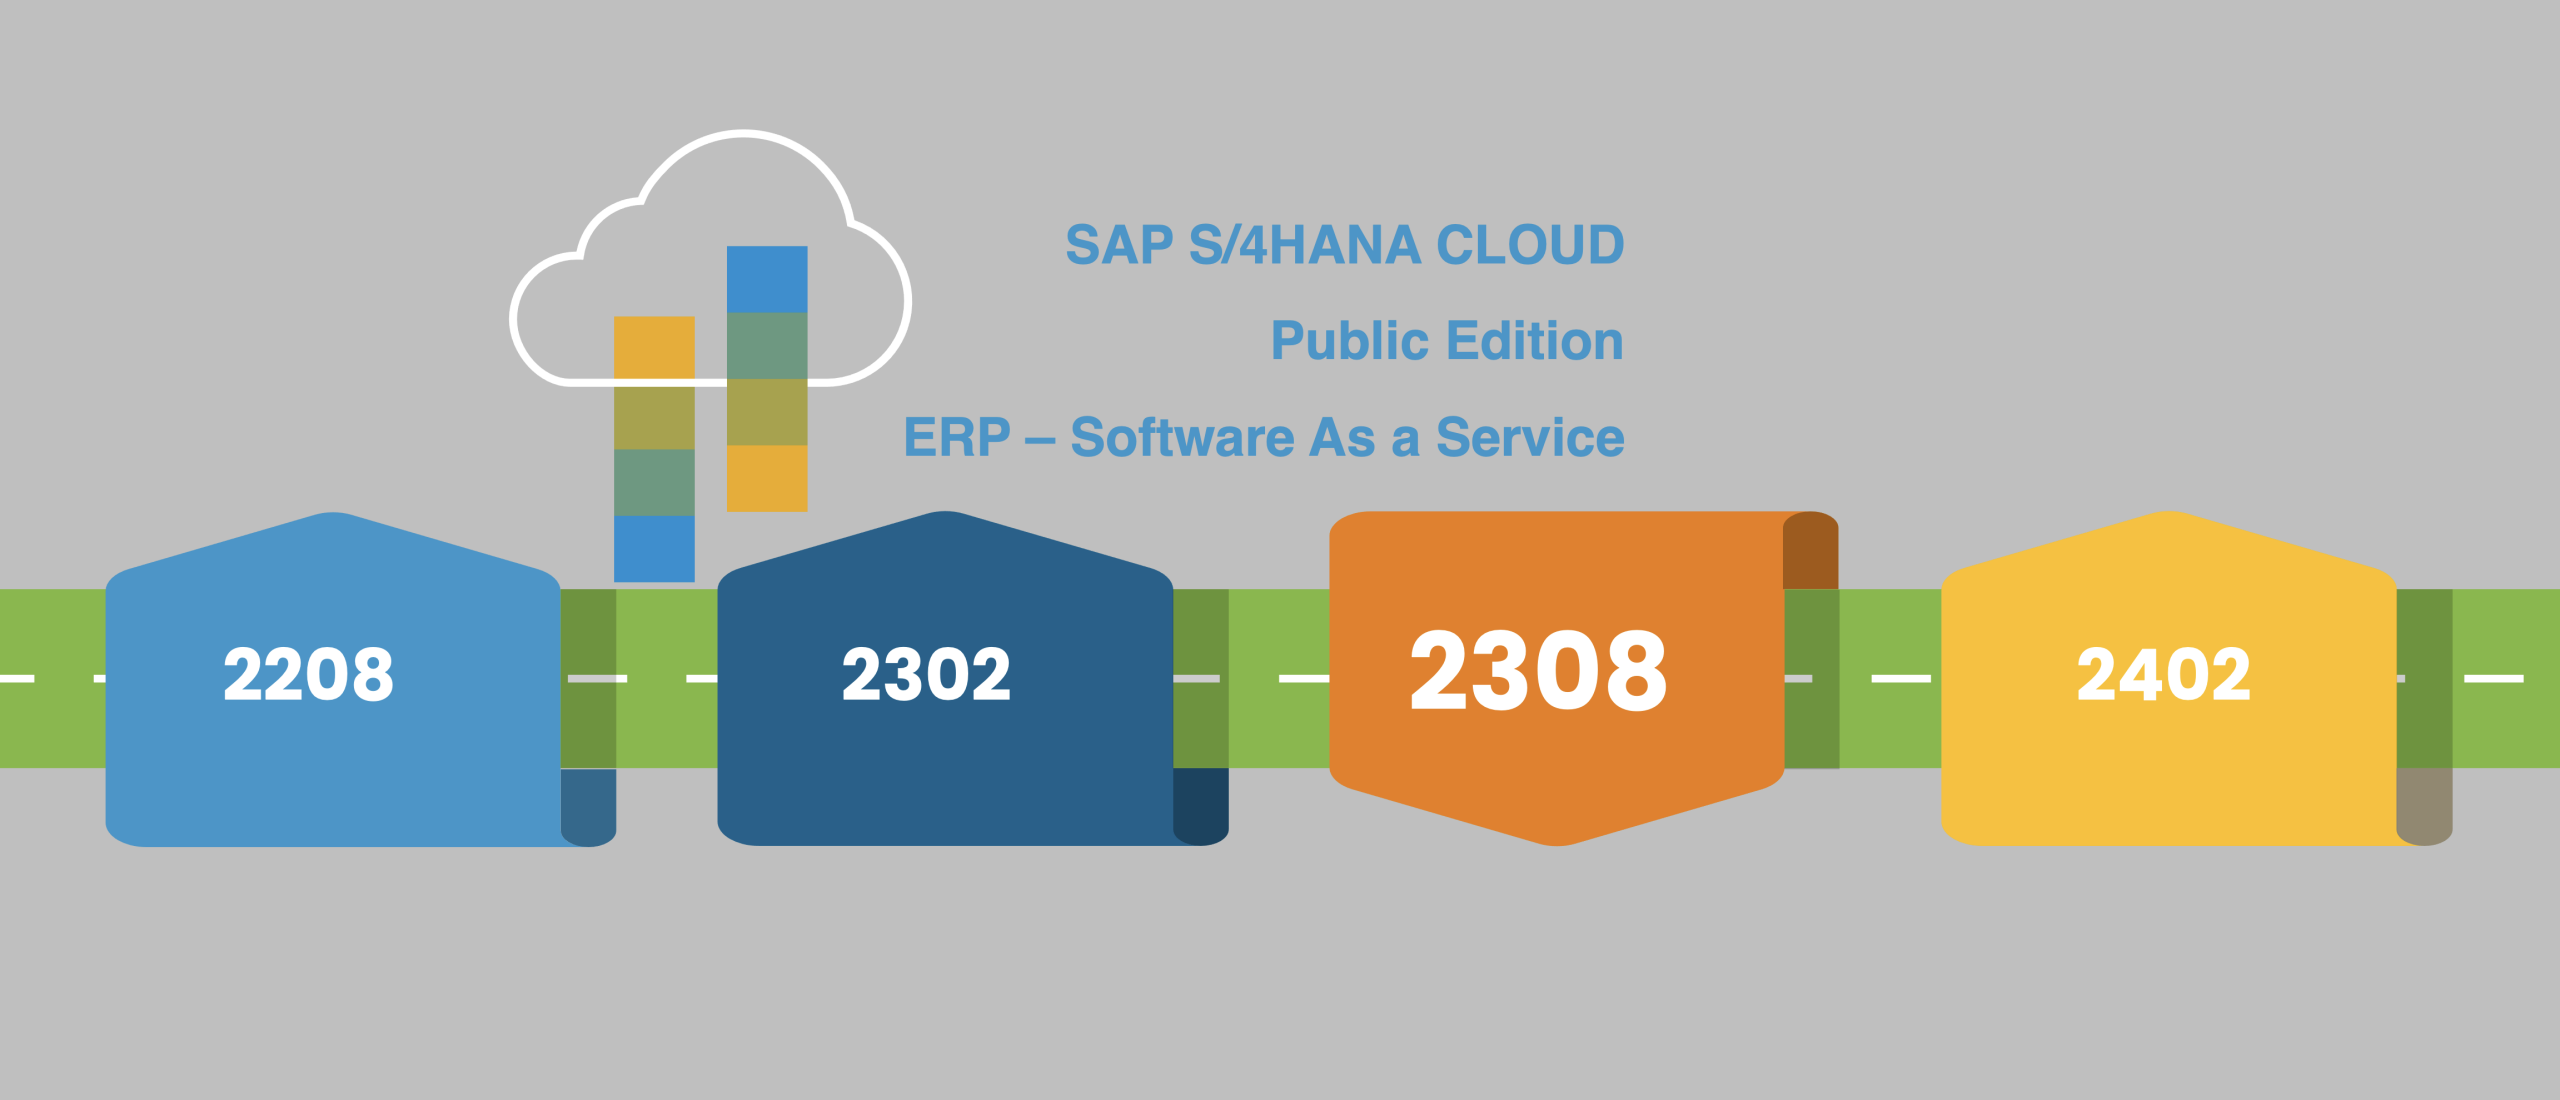 Release 2308 | SAP S/4HANA Cloud, Public Edition